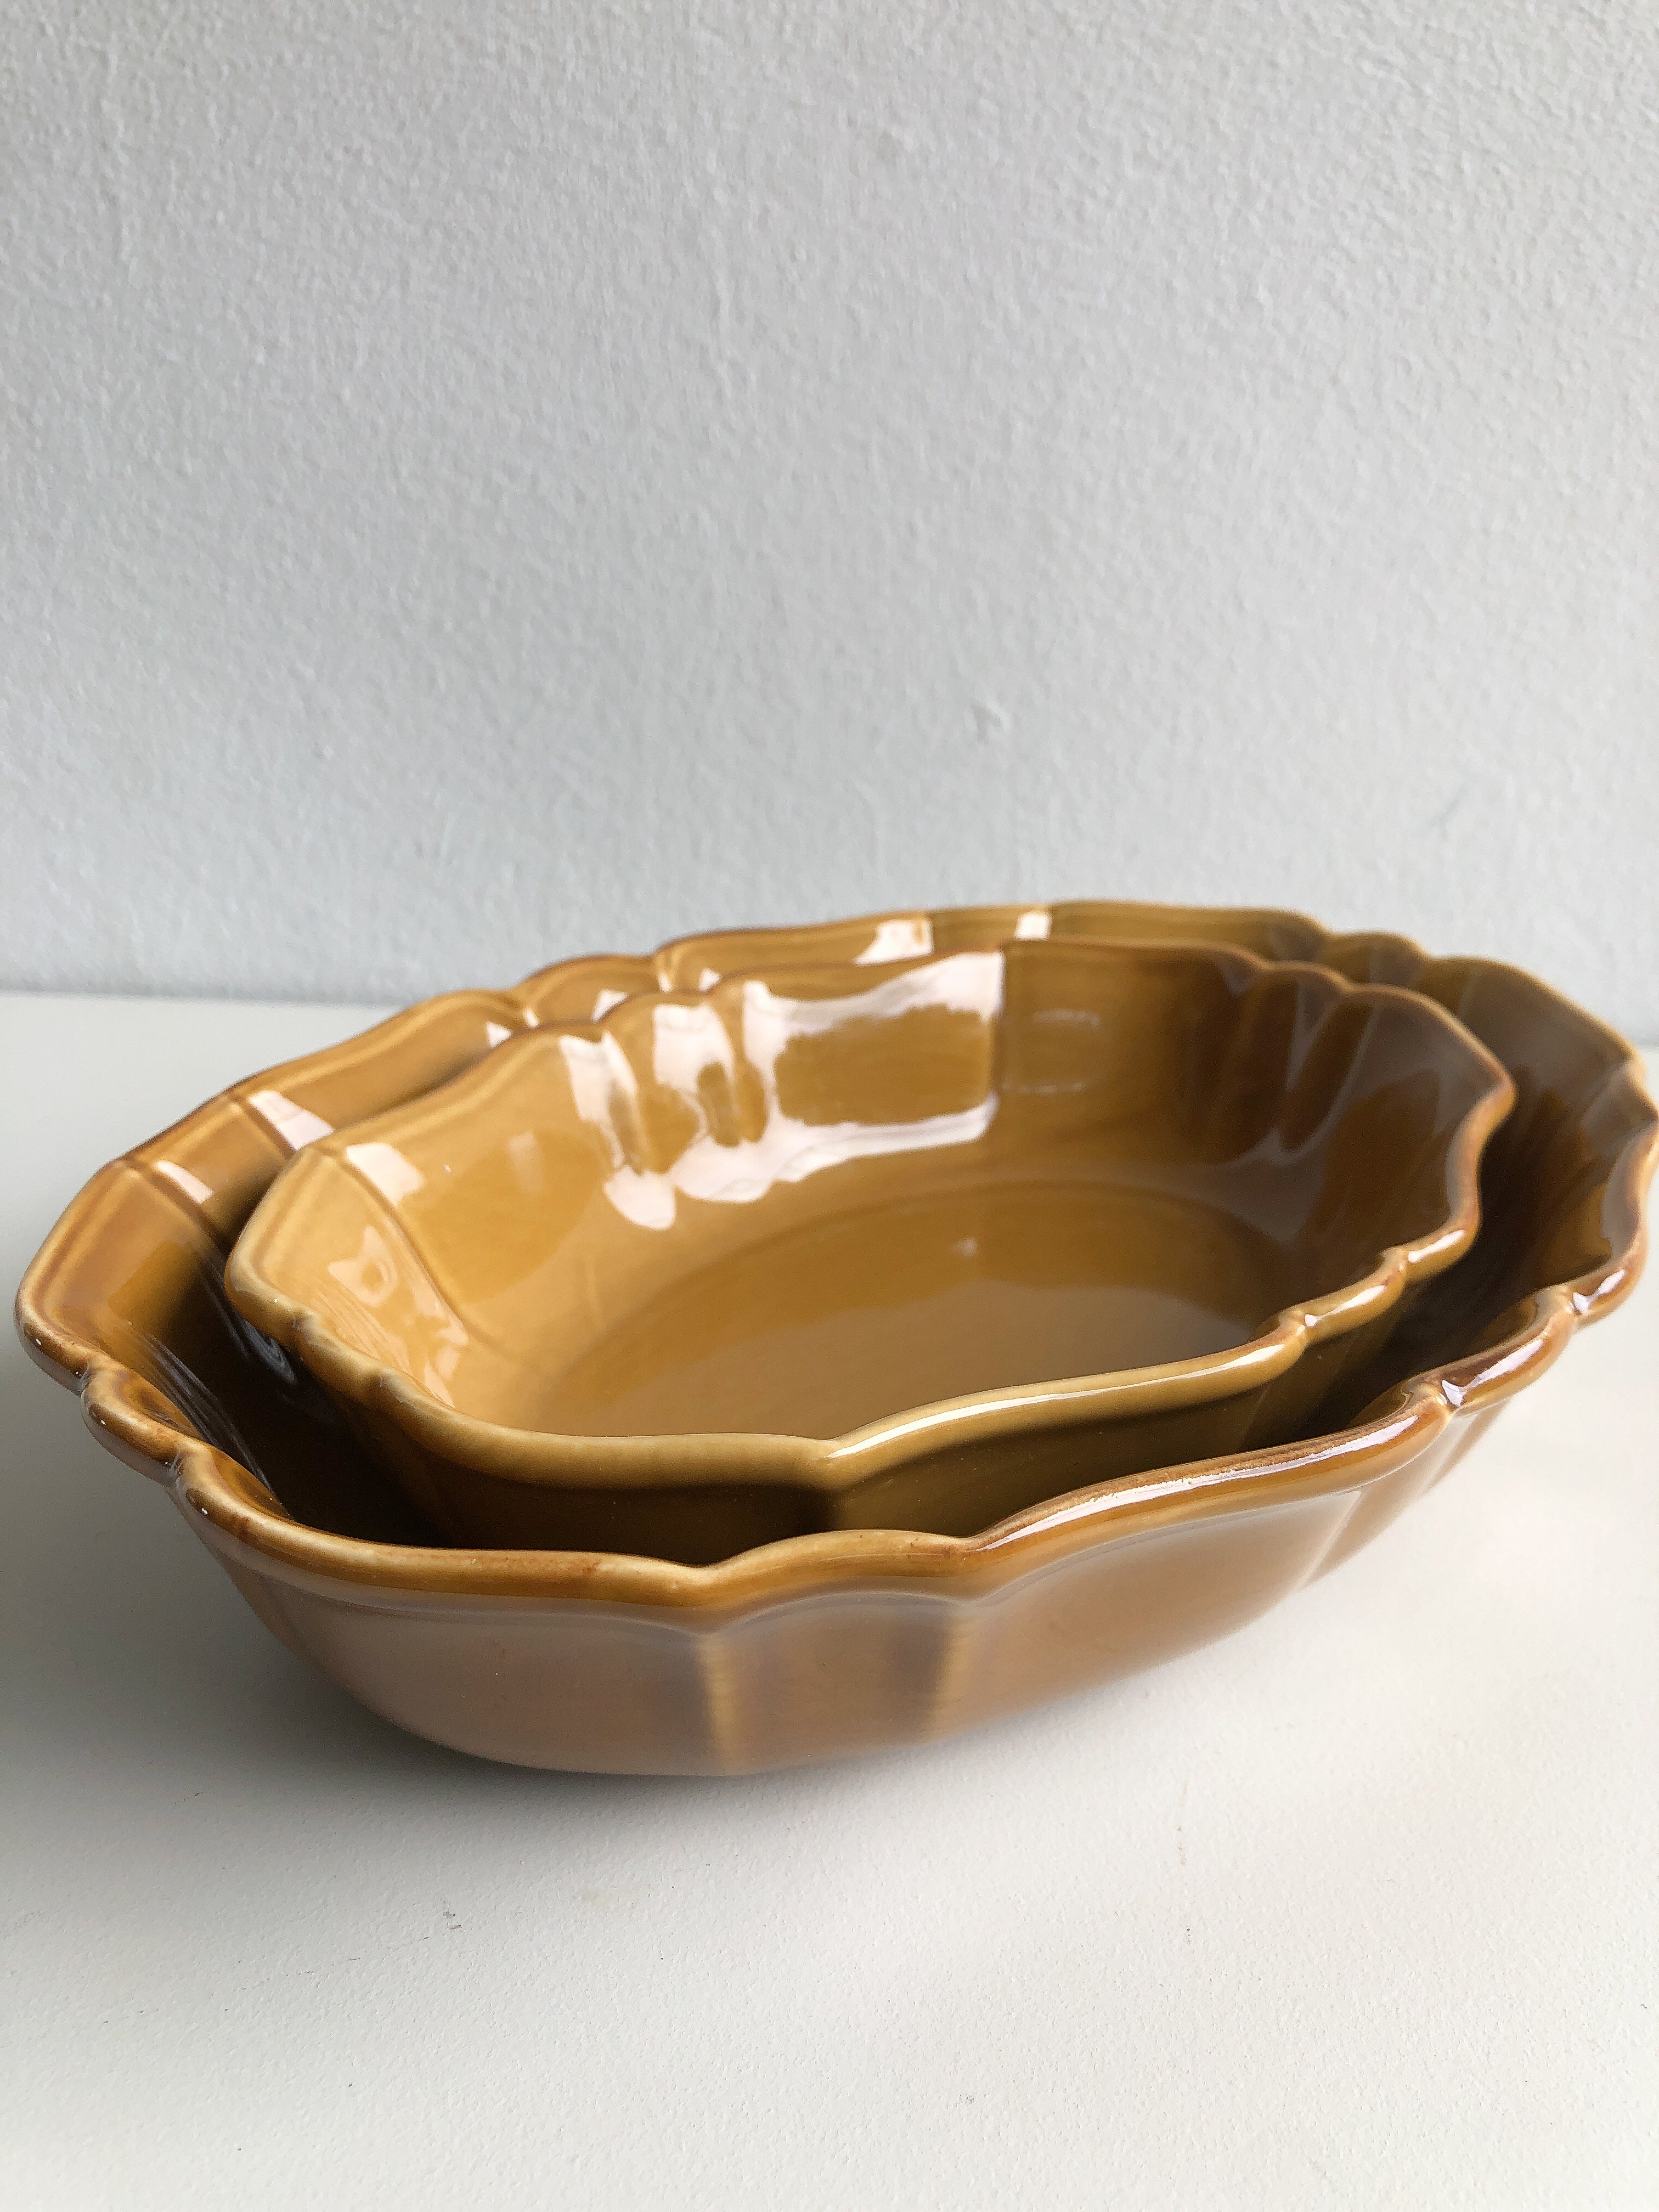 Ceramic Nesting Casserole Set by PROSE Tabletop